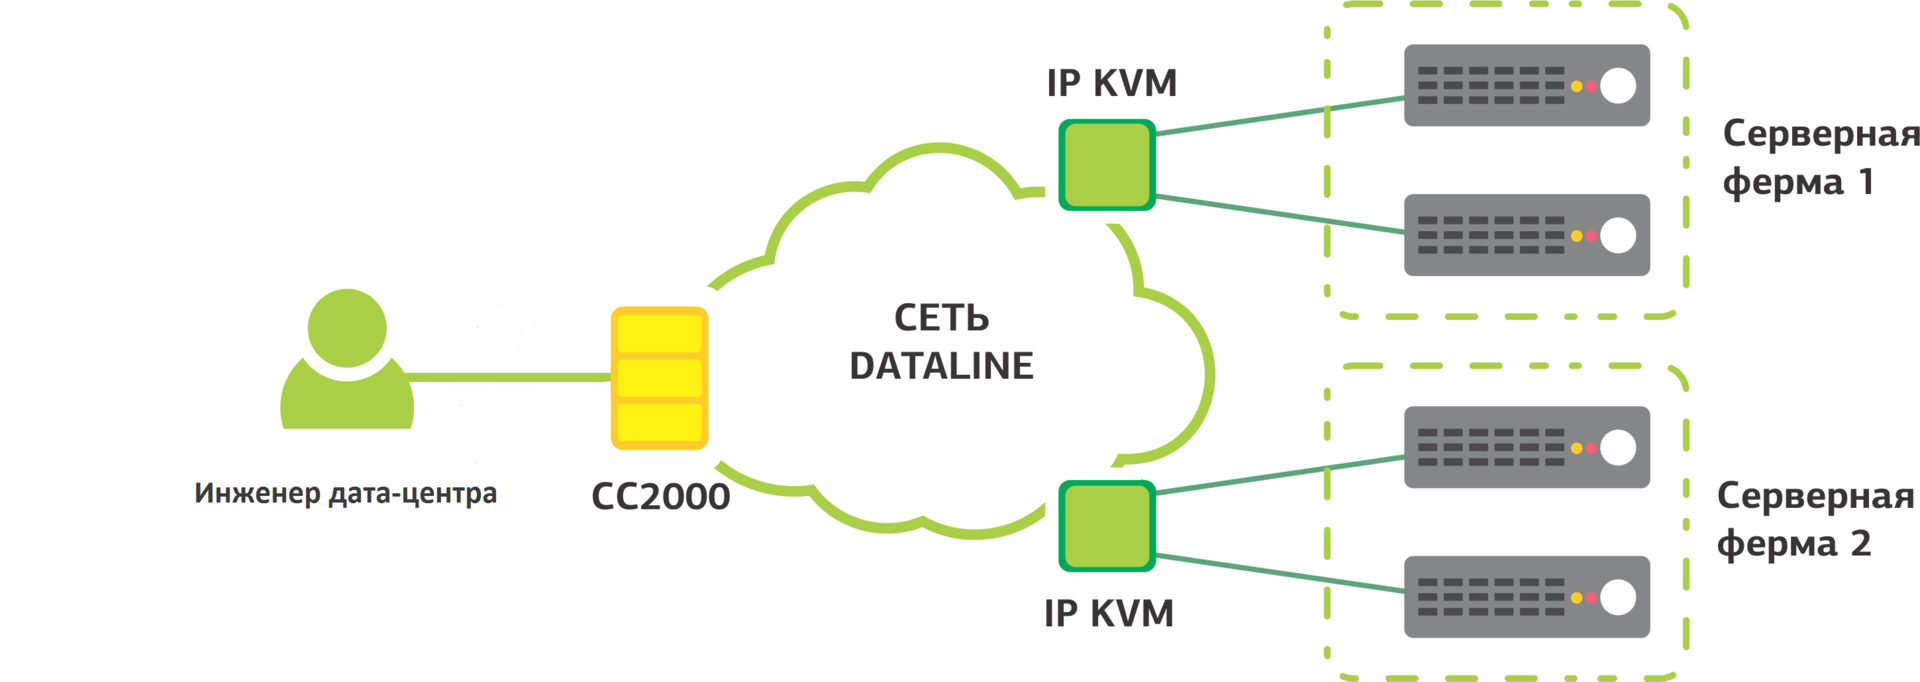 Полезные мелочи в дата-центре: Wi-Fi IP KVM - 12